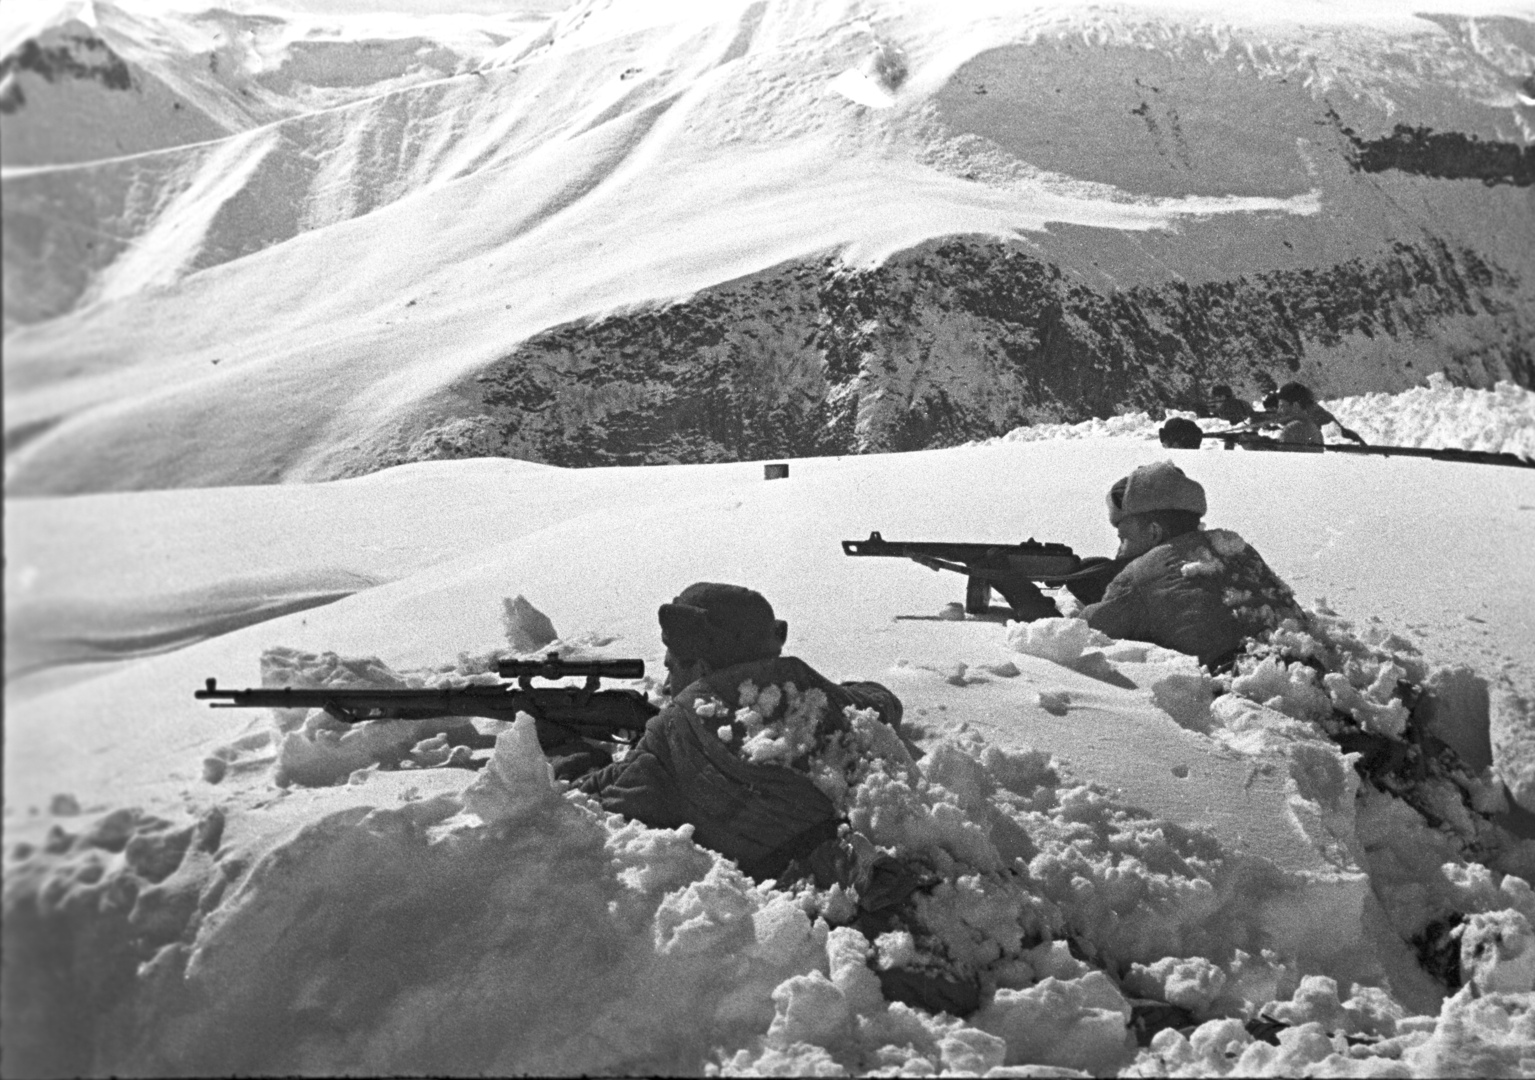 الاستخبارات الخارجية الروسية تكشف عن خطط ألمانيا النازية لاستخدام أسلحة كيميائية في القوقاز عام 1942